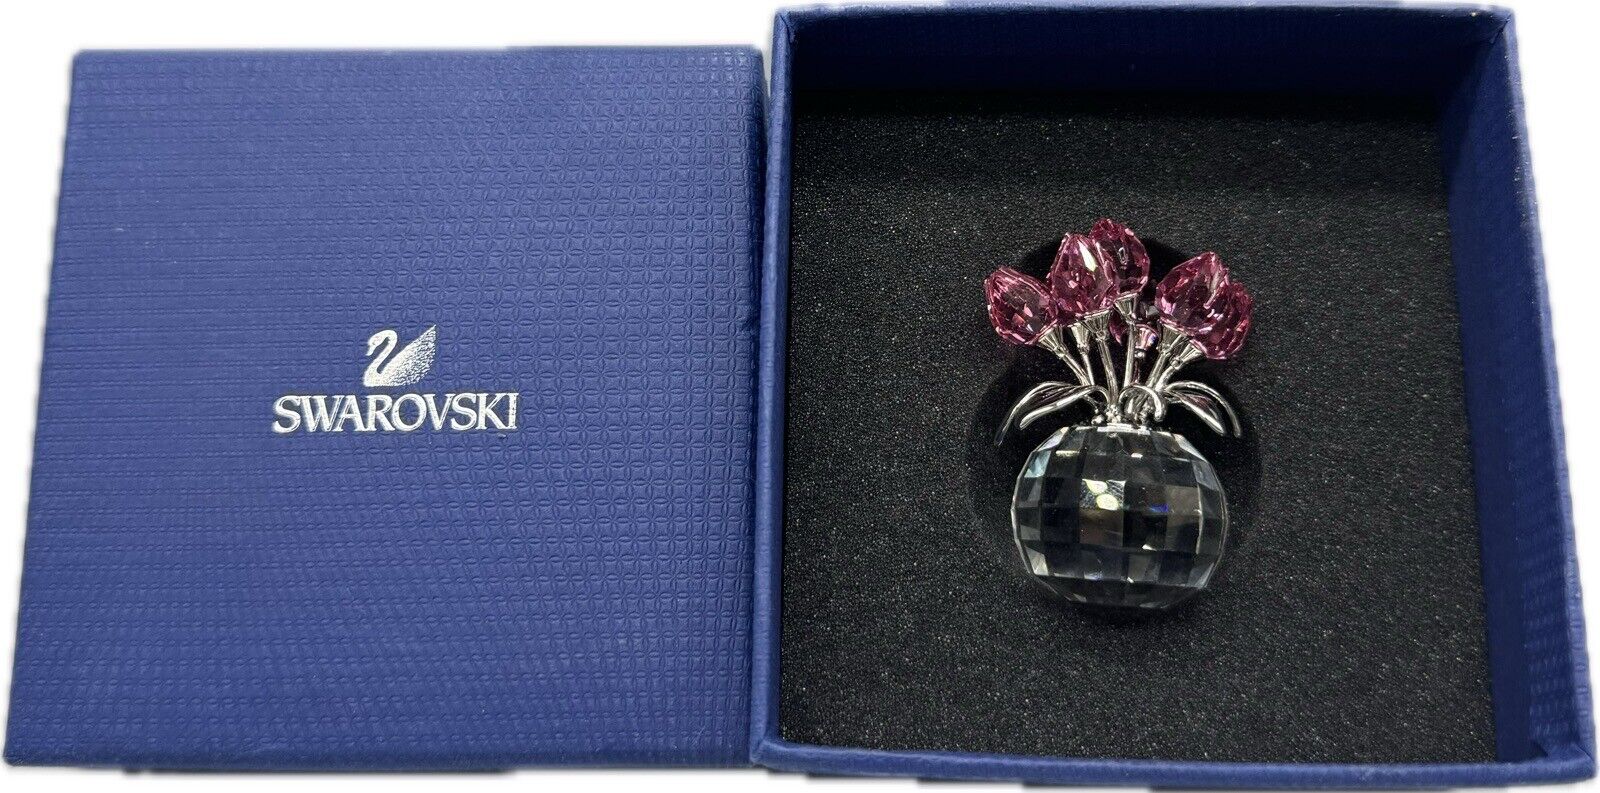 Swarovski Crystal Flower Pot Vase Pink Rose Tulips Signed Retired Figurine